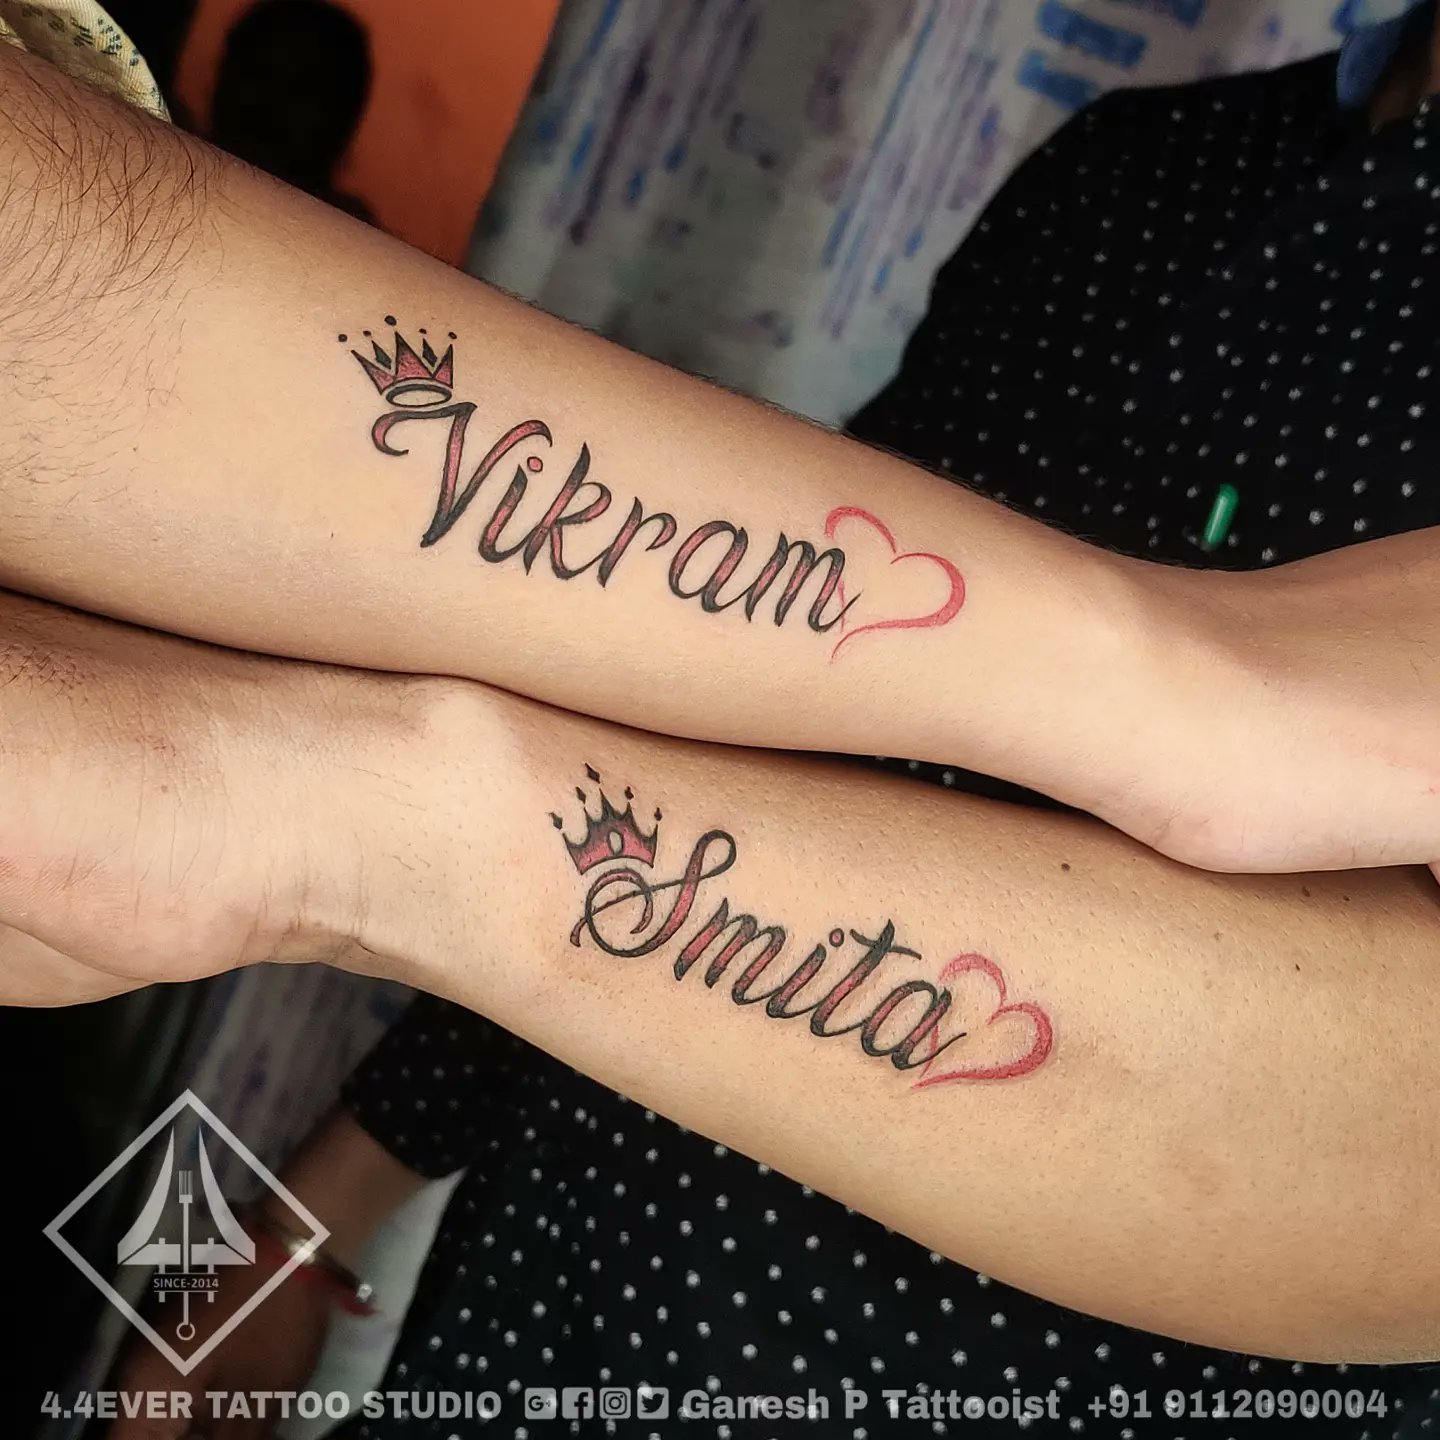 Tattoo uploaded by Sanjay Jadav • Lion tattoo • Tattoodo